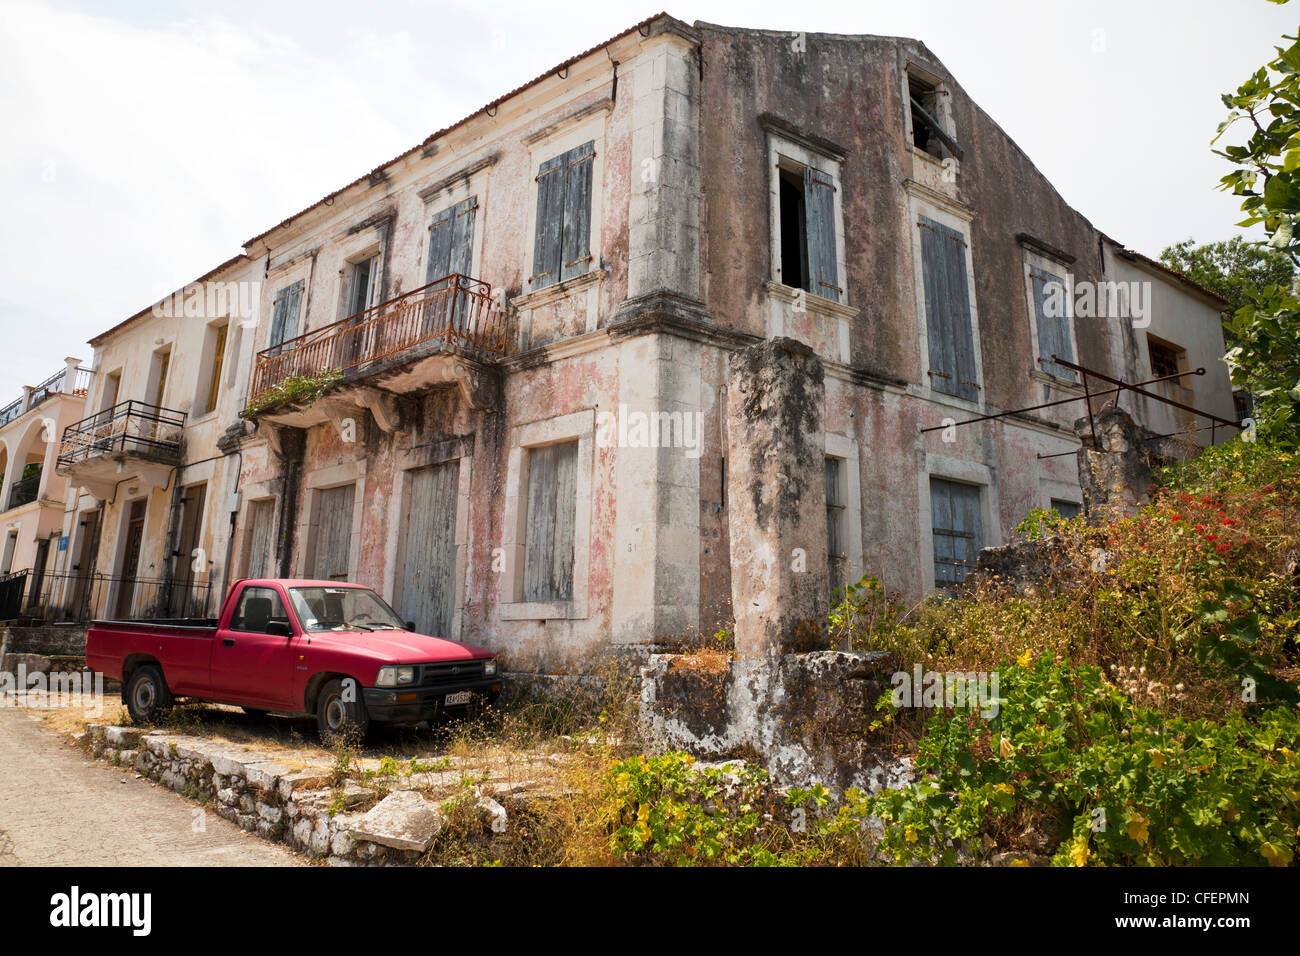 L'île de Céphalonie, grec, la Grèce, l'abandon typique maison abandonnée à Fiscardo avec camion stationné à l'extérieur rouge Banque D'Images